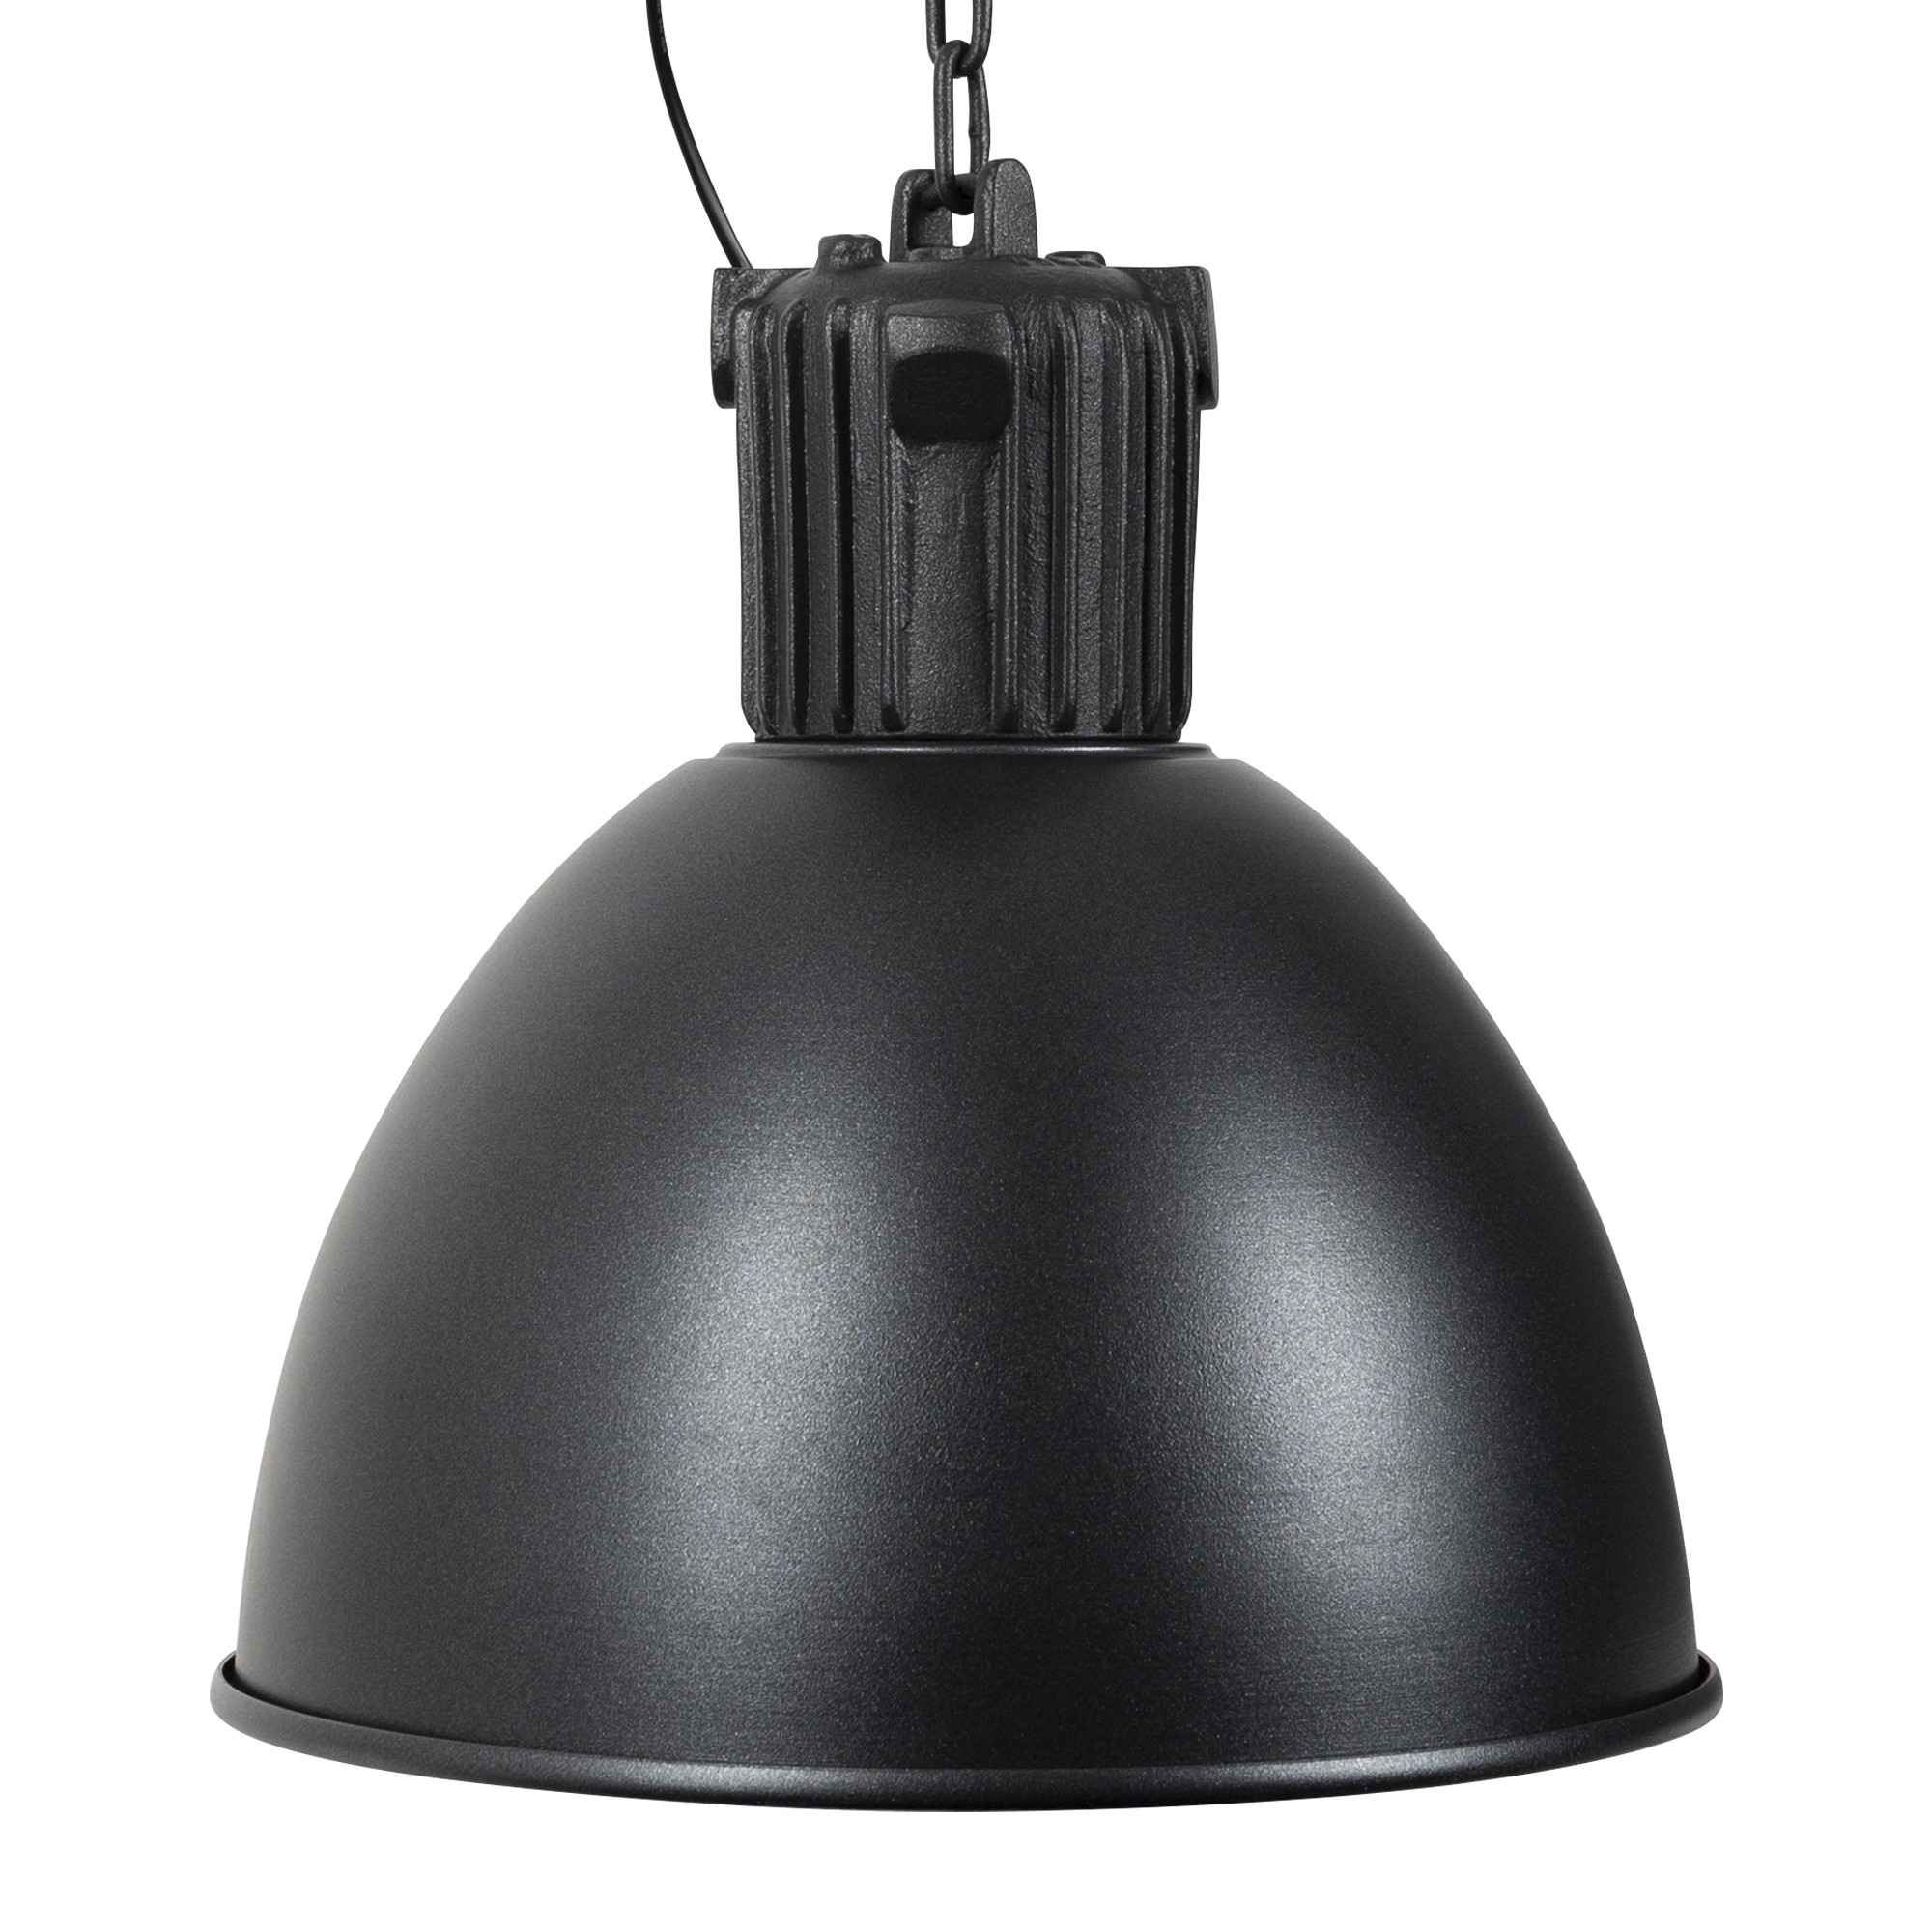 Hanglamp Aviator Industrie Antraciet industriële lamp